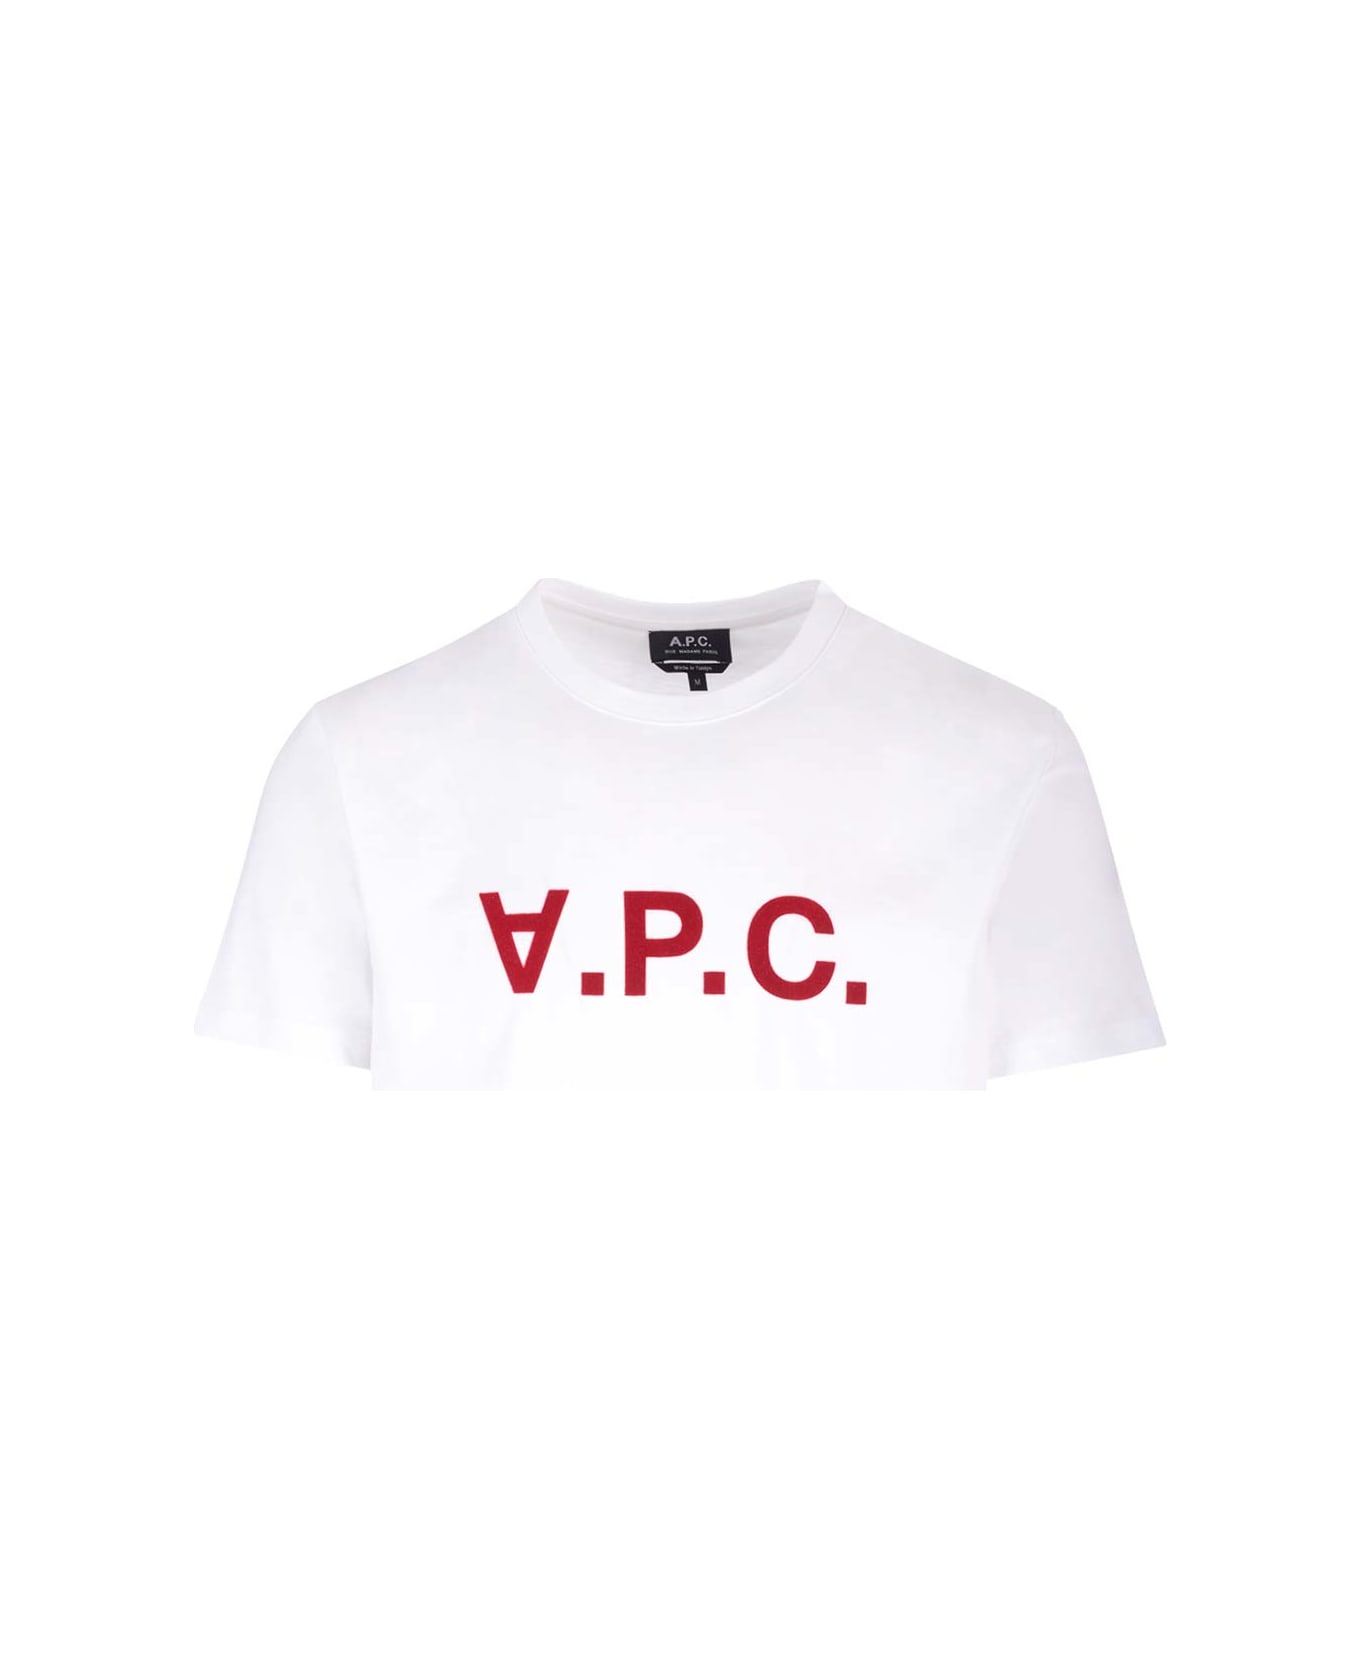 A.P.C. Vpc T-shirt - Tab Blanc Rouge シャツ